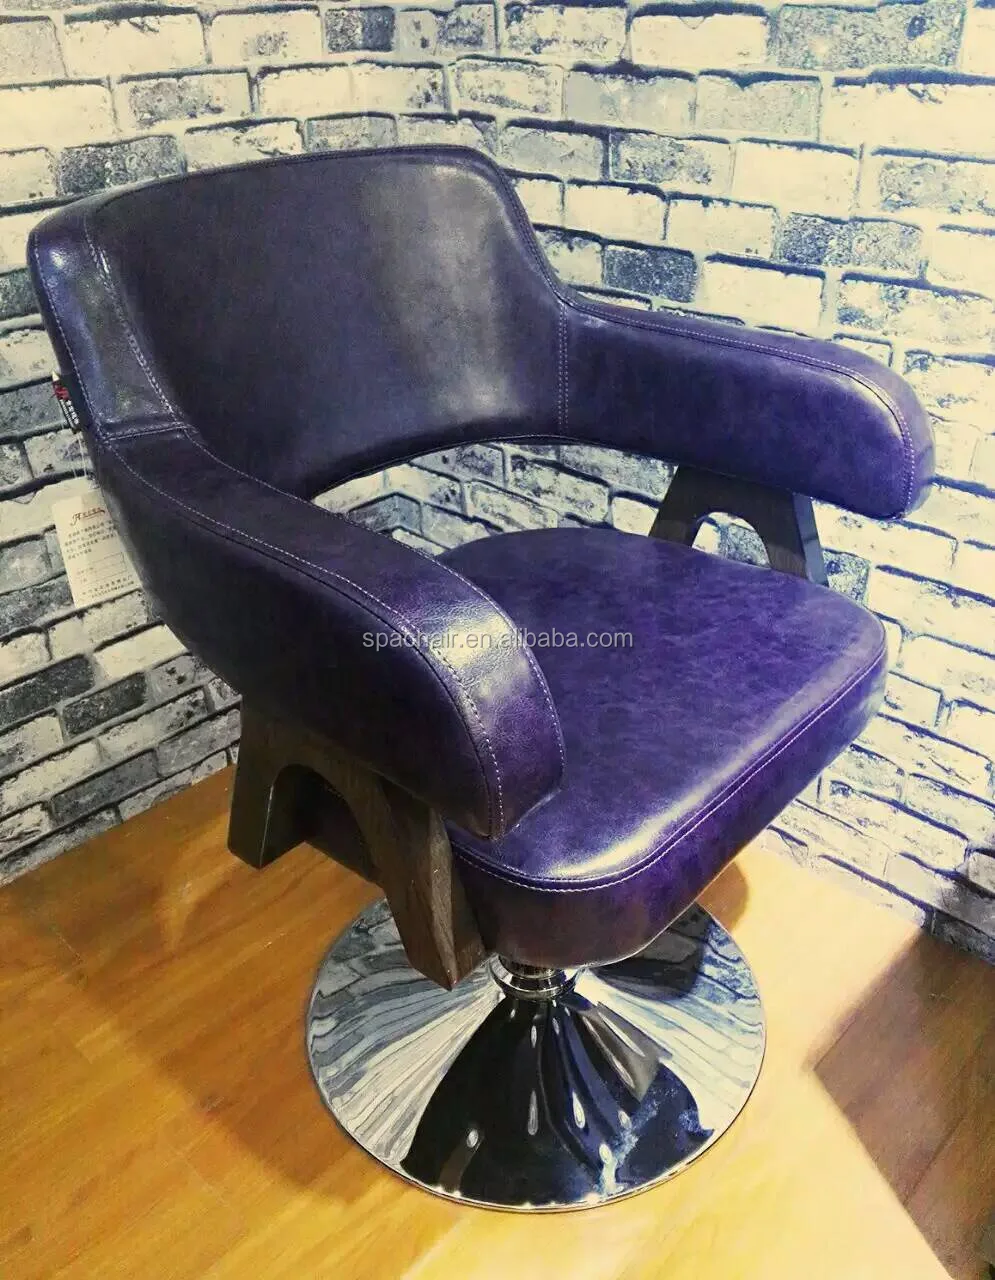 Mobile Hair Salon Beauty Equipment Chair Barber Chair Hair Salon